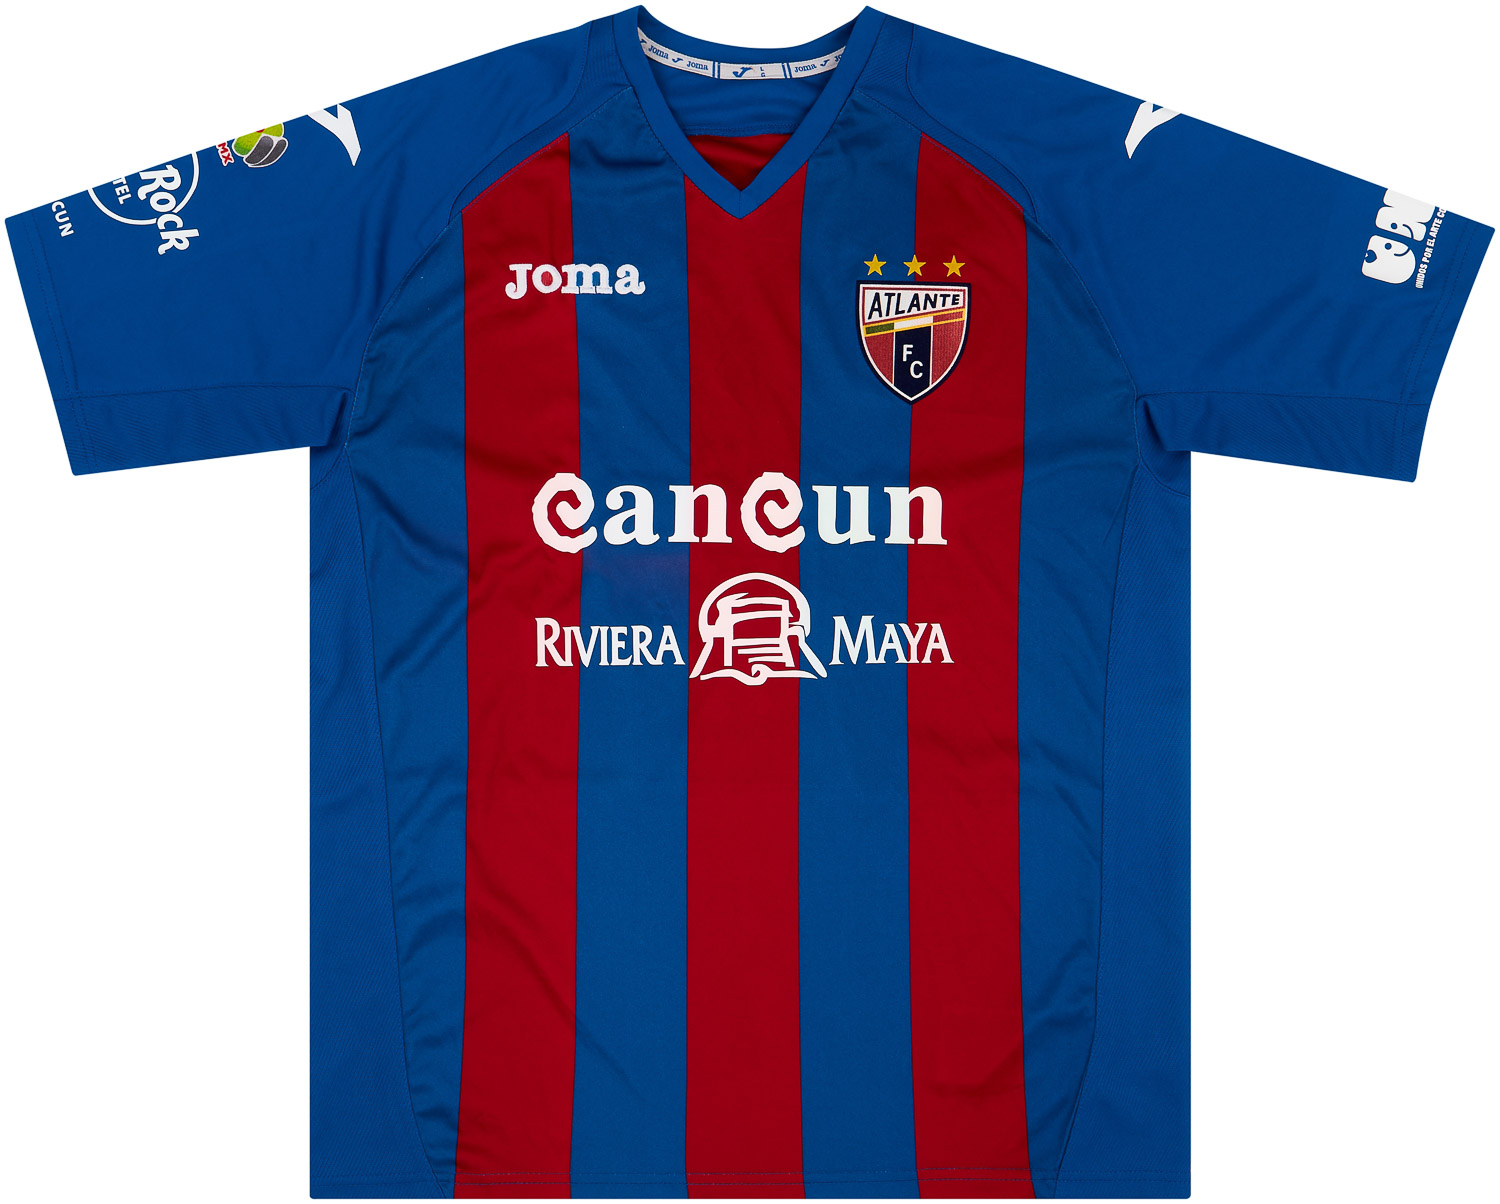 neumonía Relámpago juego Atlante Home football shirt 2018 - 2019. Sponsored by Riviera Maya